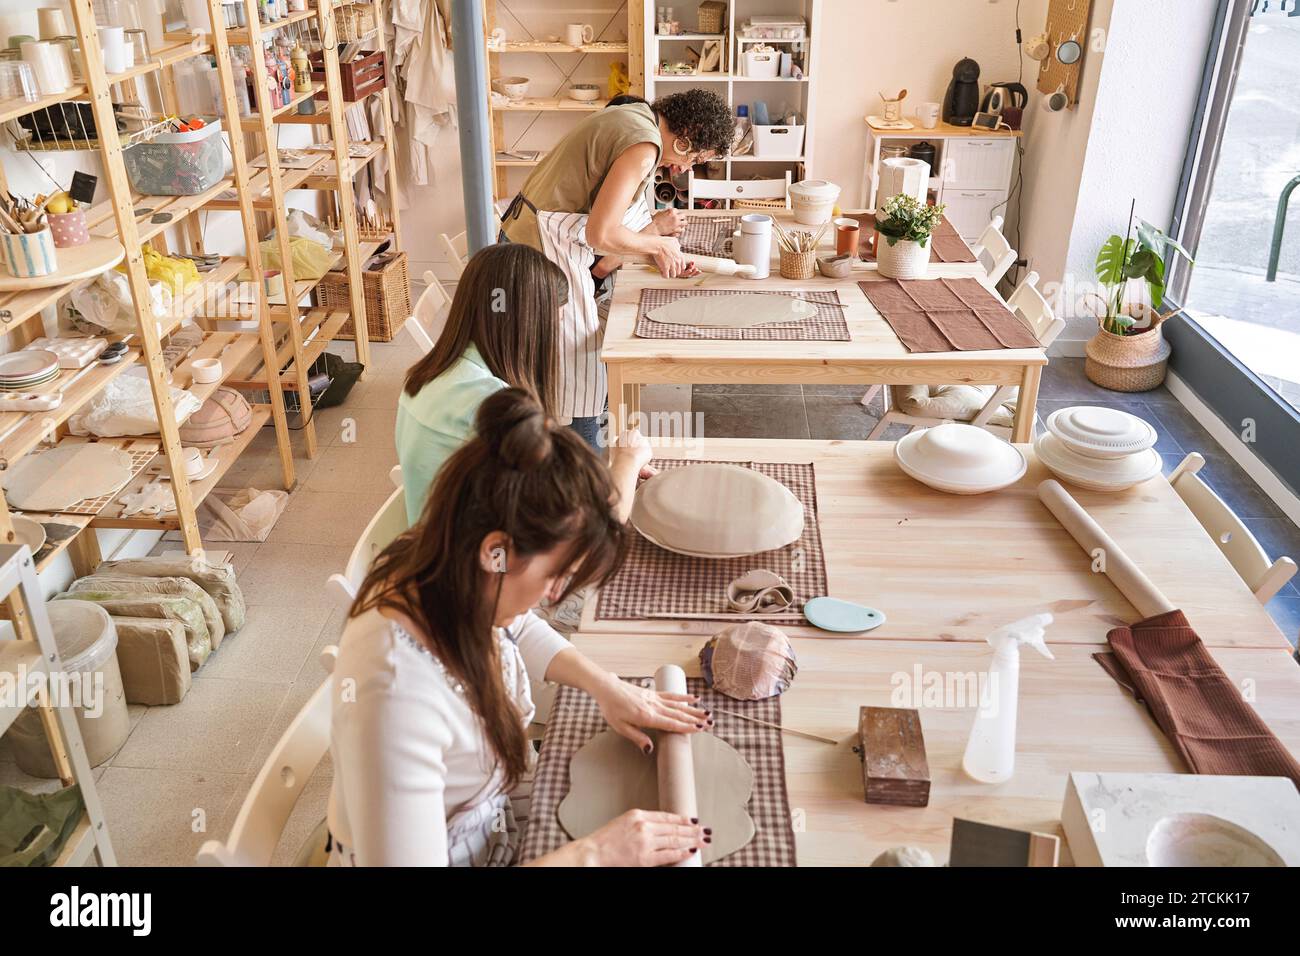 Tre artigiani si concentrano sui loro progetti di ceramica, collaborando in uno spazio di lavoro pieno di luce e creatività. Concetto di artigianato Foto Stock